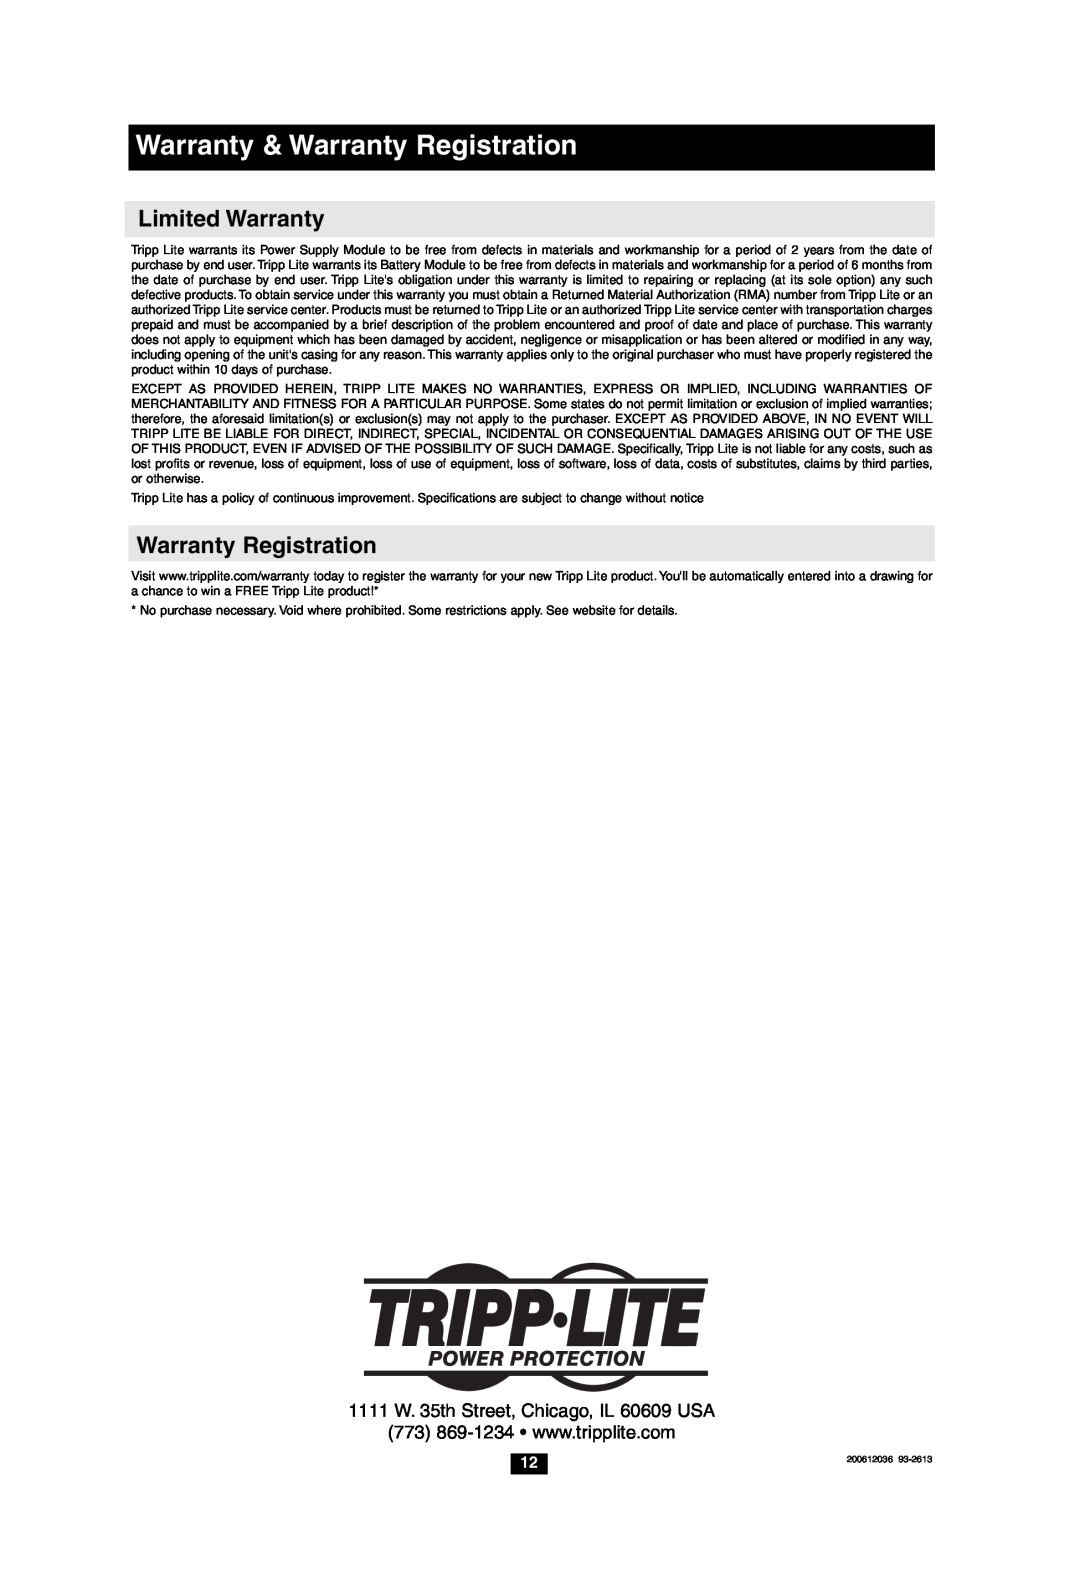 Tripp Lite HCRK-1 Limited Warranty, Warranty & Warranty Registration, 1111 W. 35th Street, Chicago, IL 60609 USA 